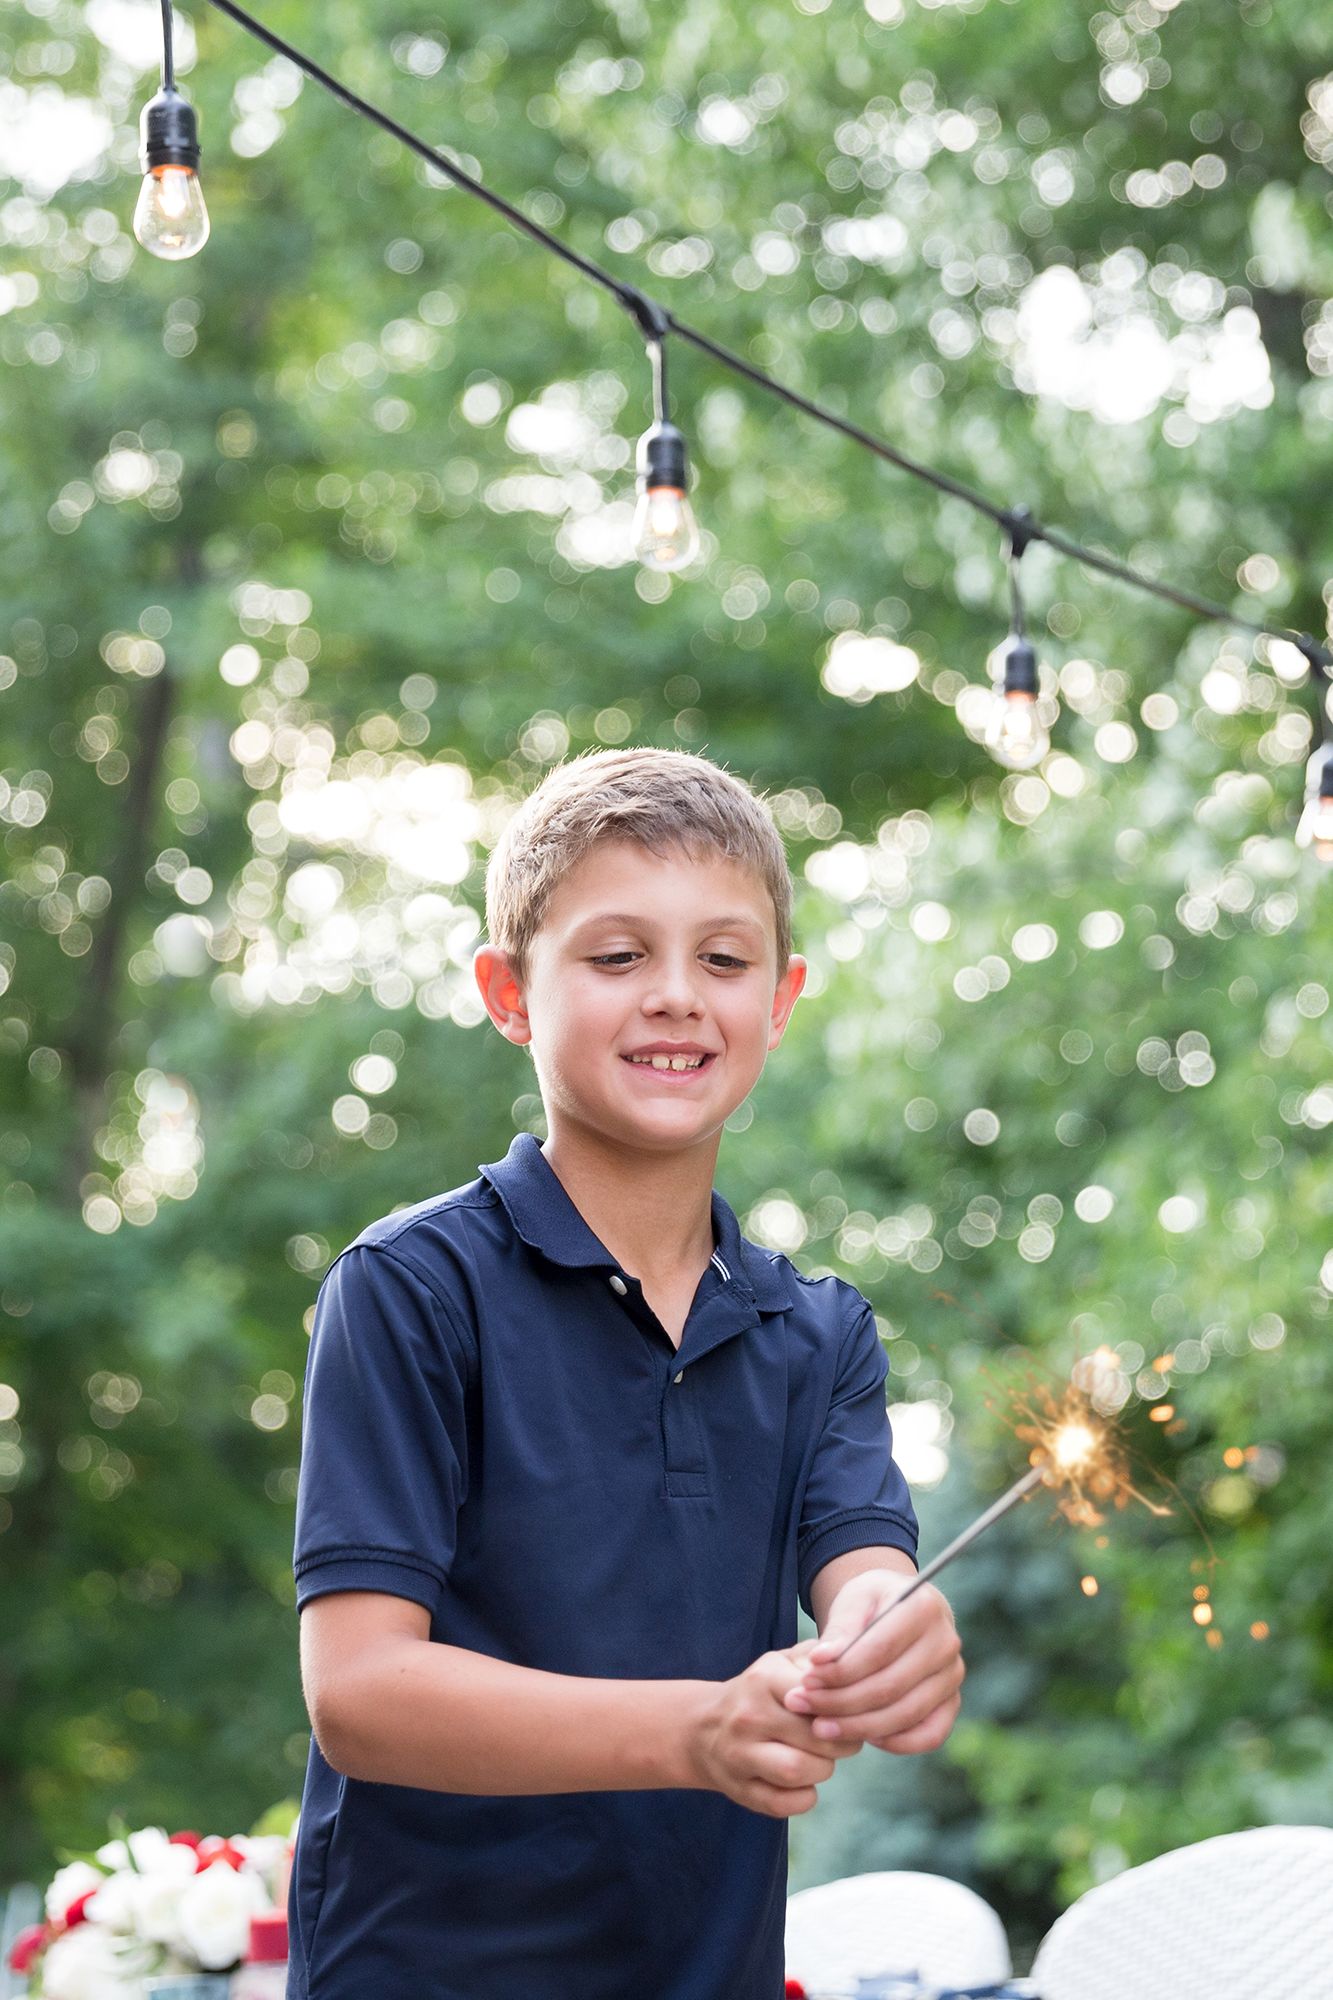 One Stylish Party - Boy holding a sparkler